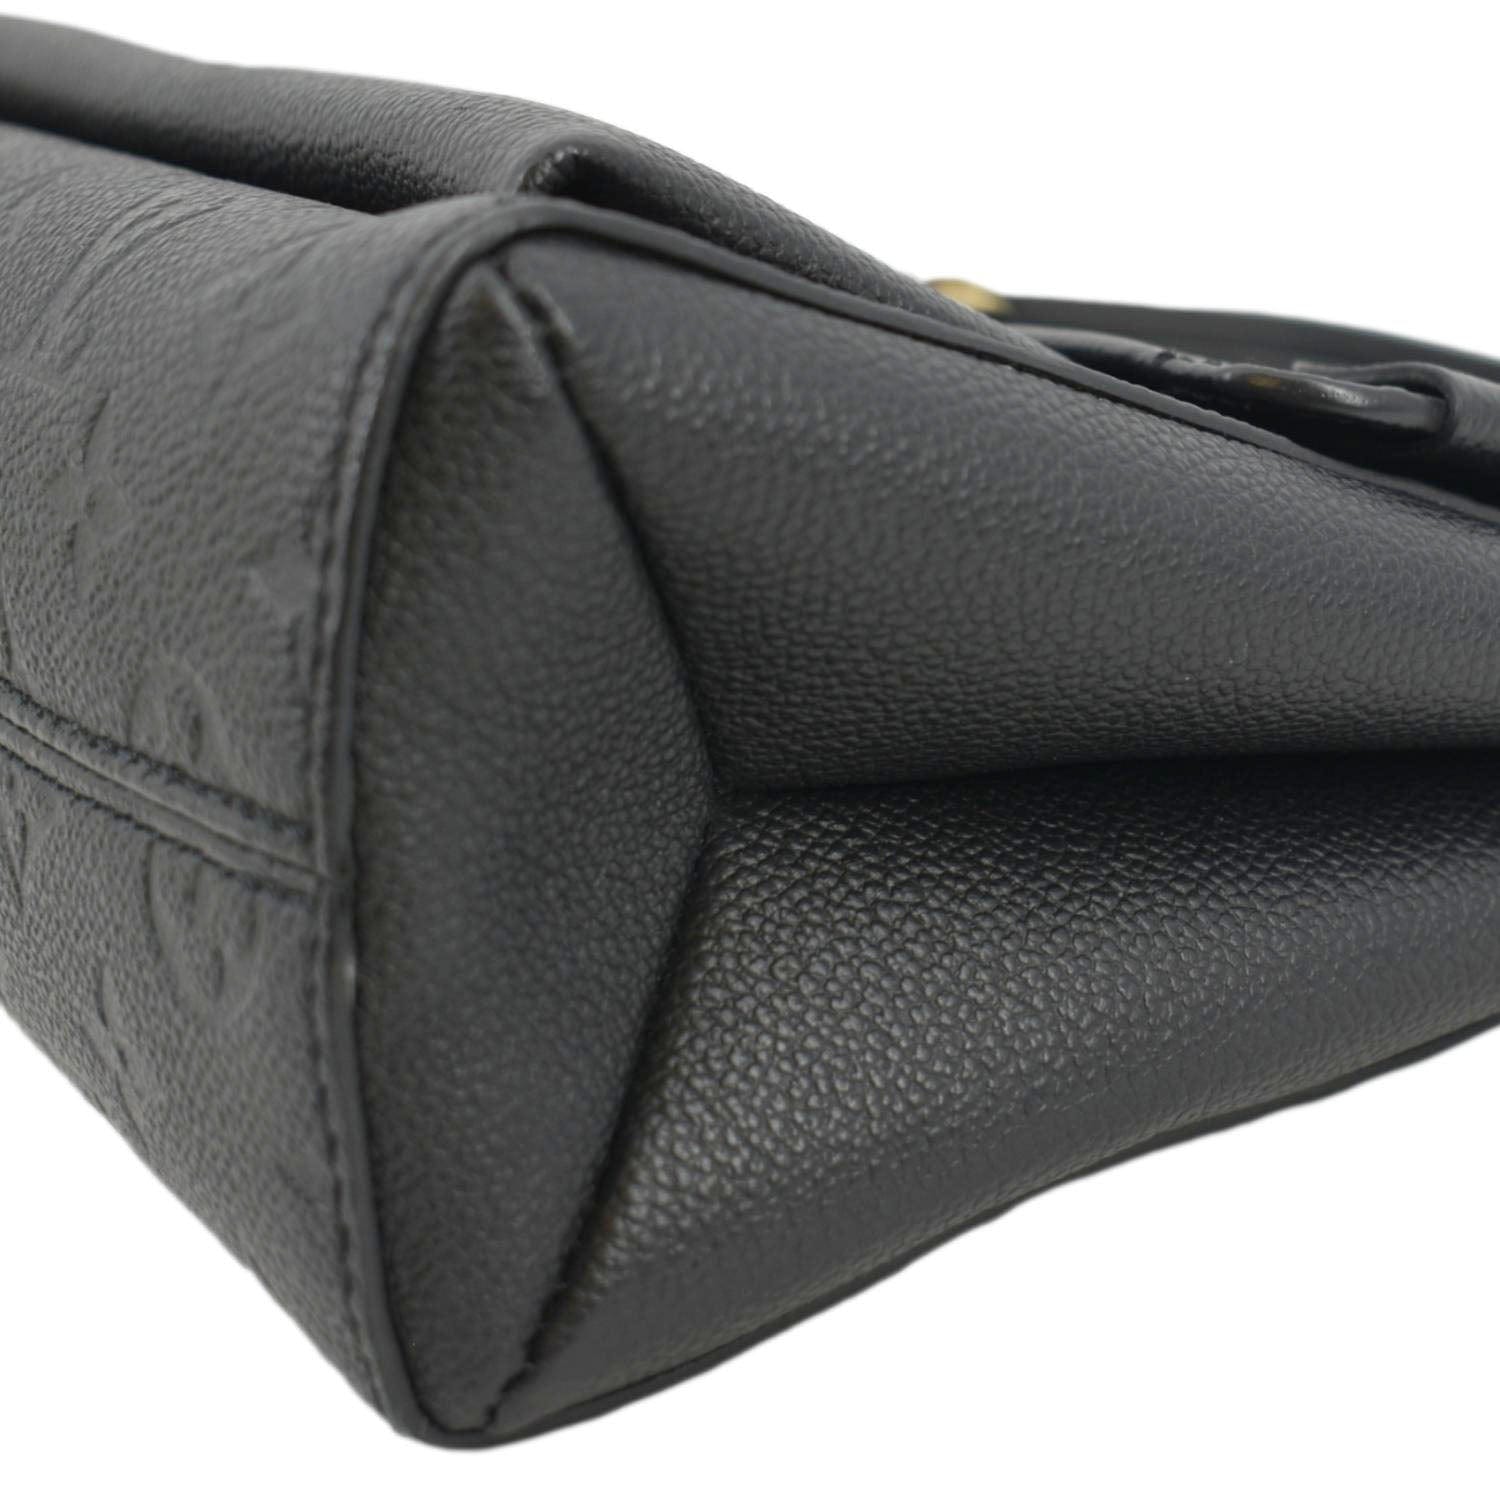 LOUIS VUITTON Black Vavin Monogram Empreinte Leather Shoulder Bag PM M44151